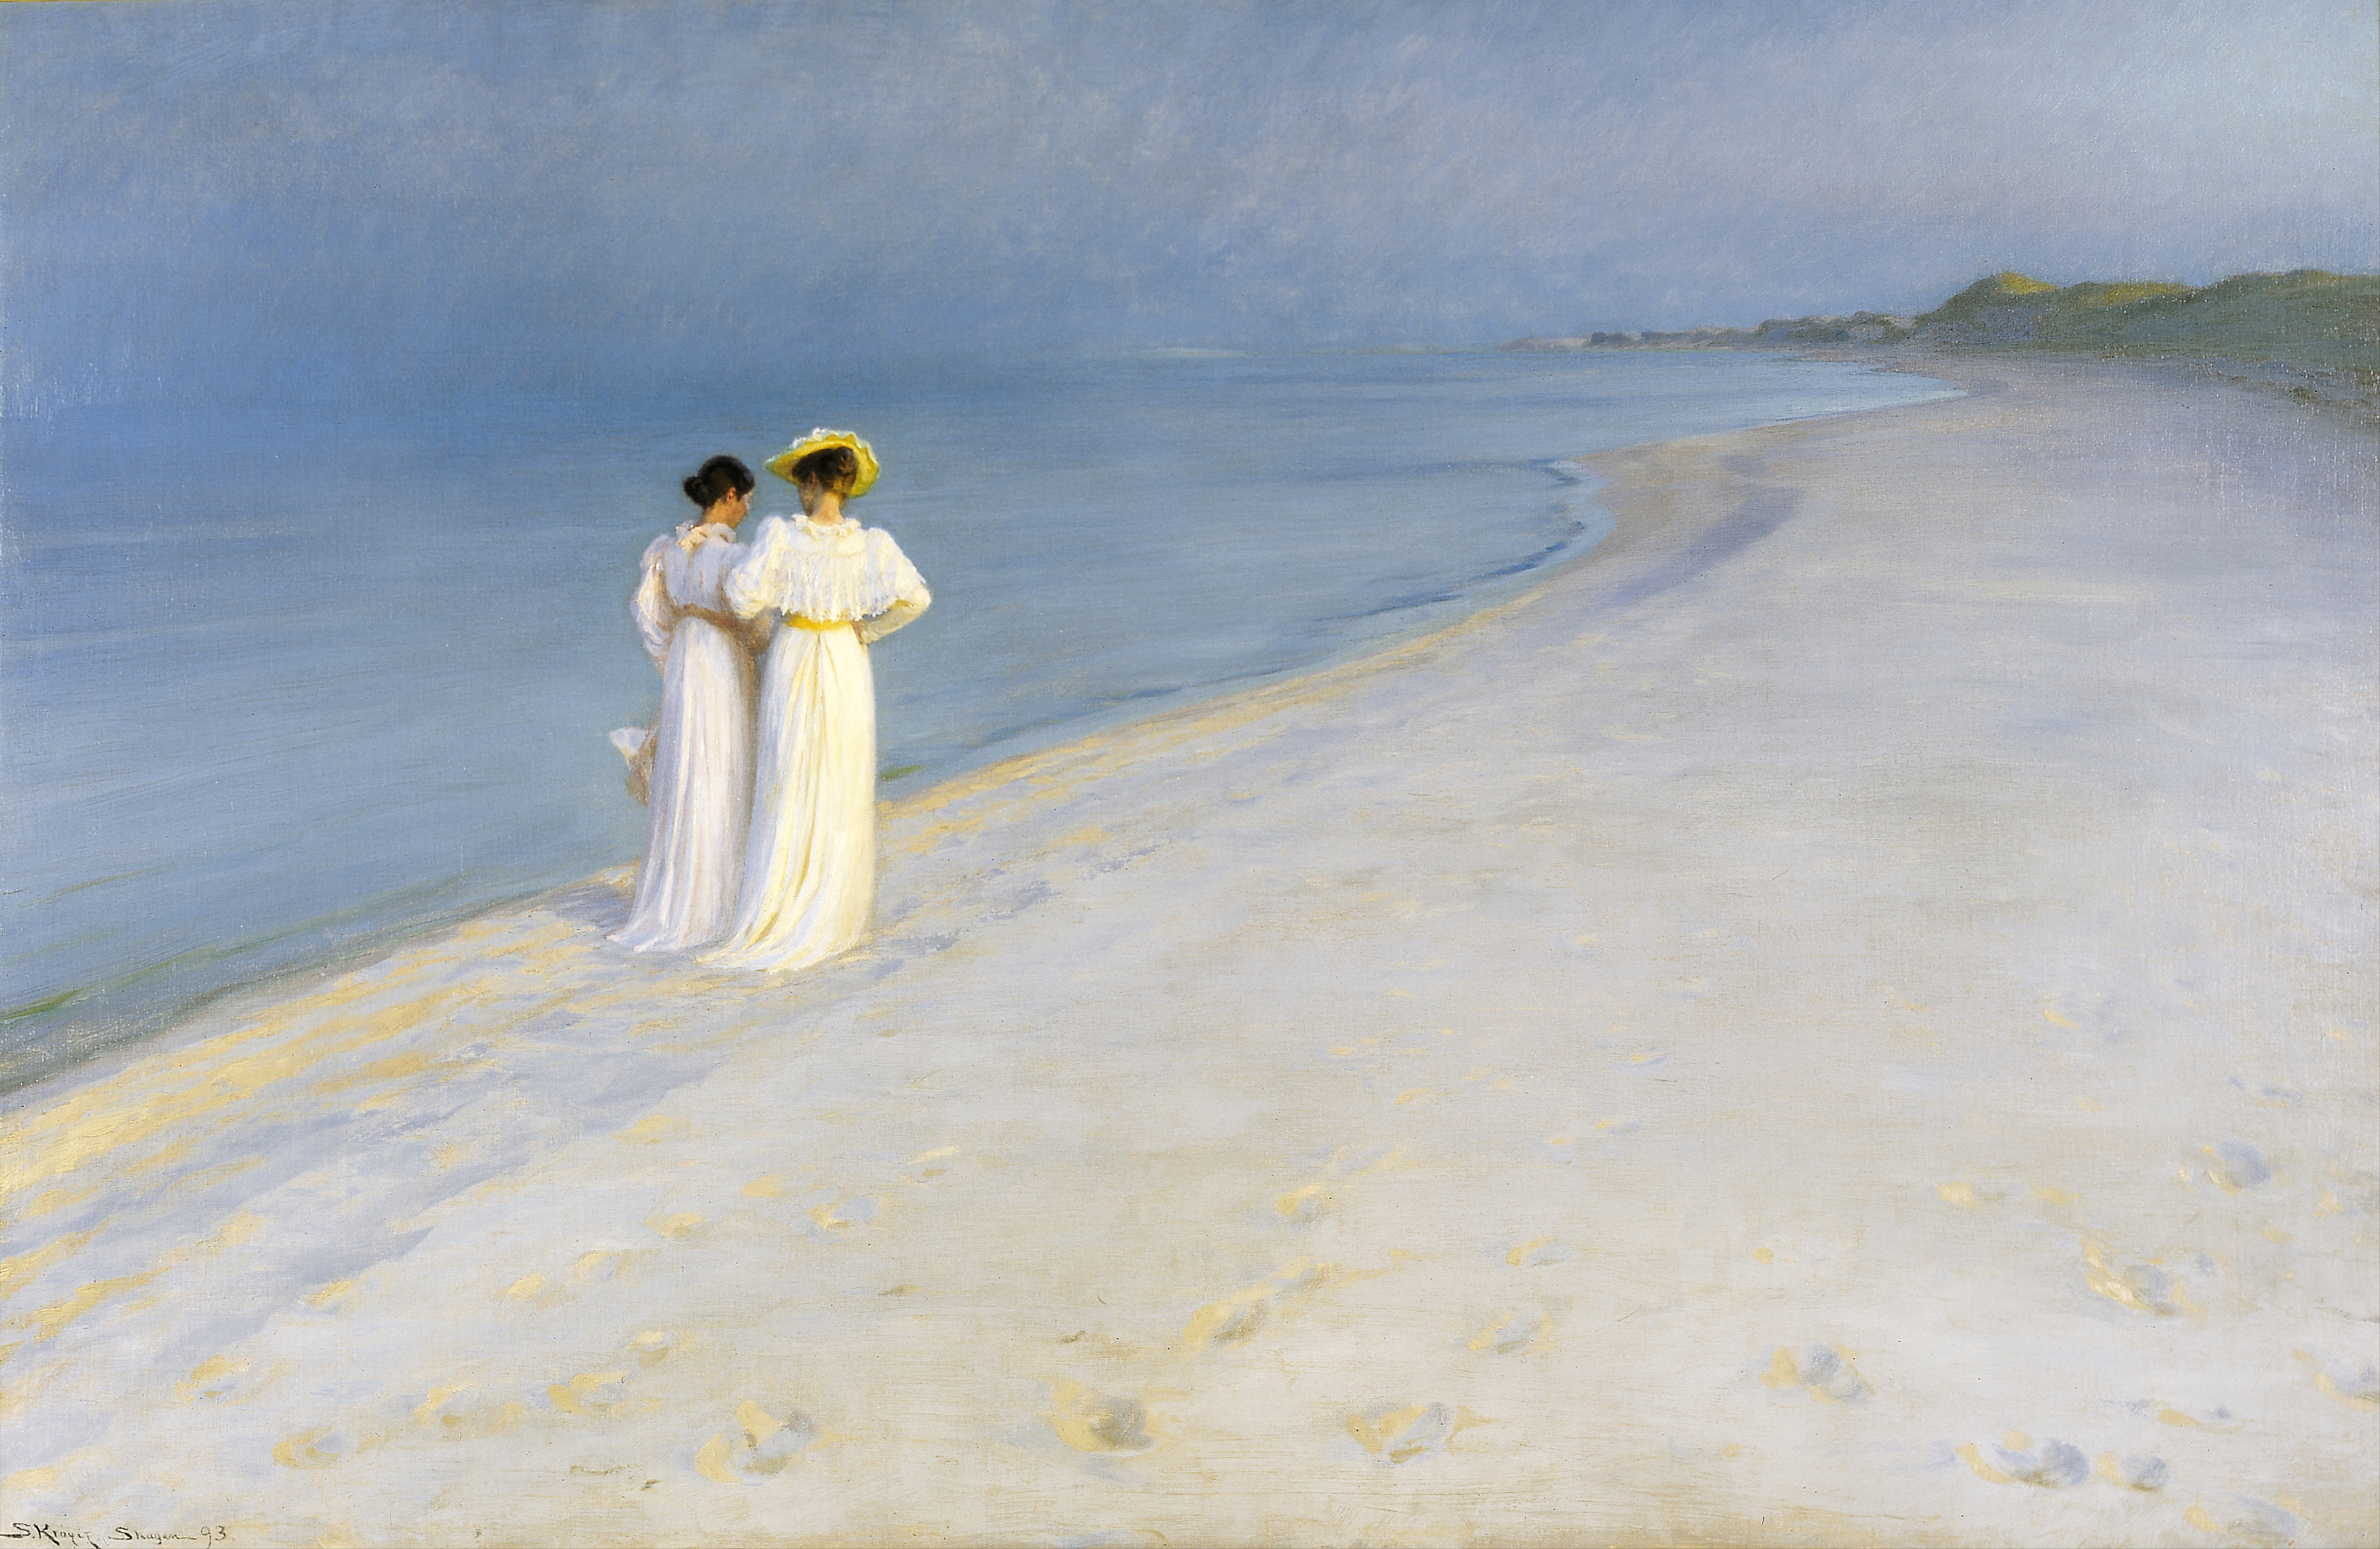 Летний вечер на южном пляже Скагена с Анной Анкер и Марией Кройер by P.S. Krøyer - 1893 - 100 x 150 см 